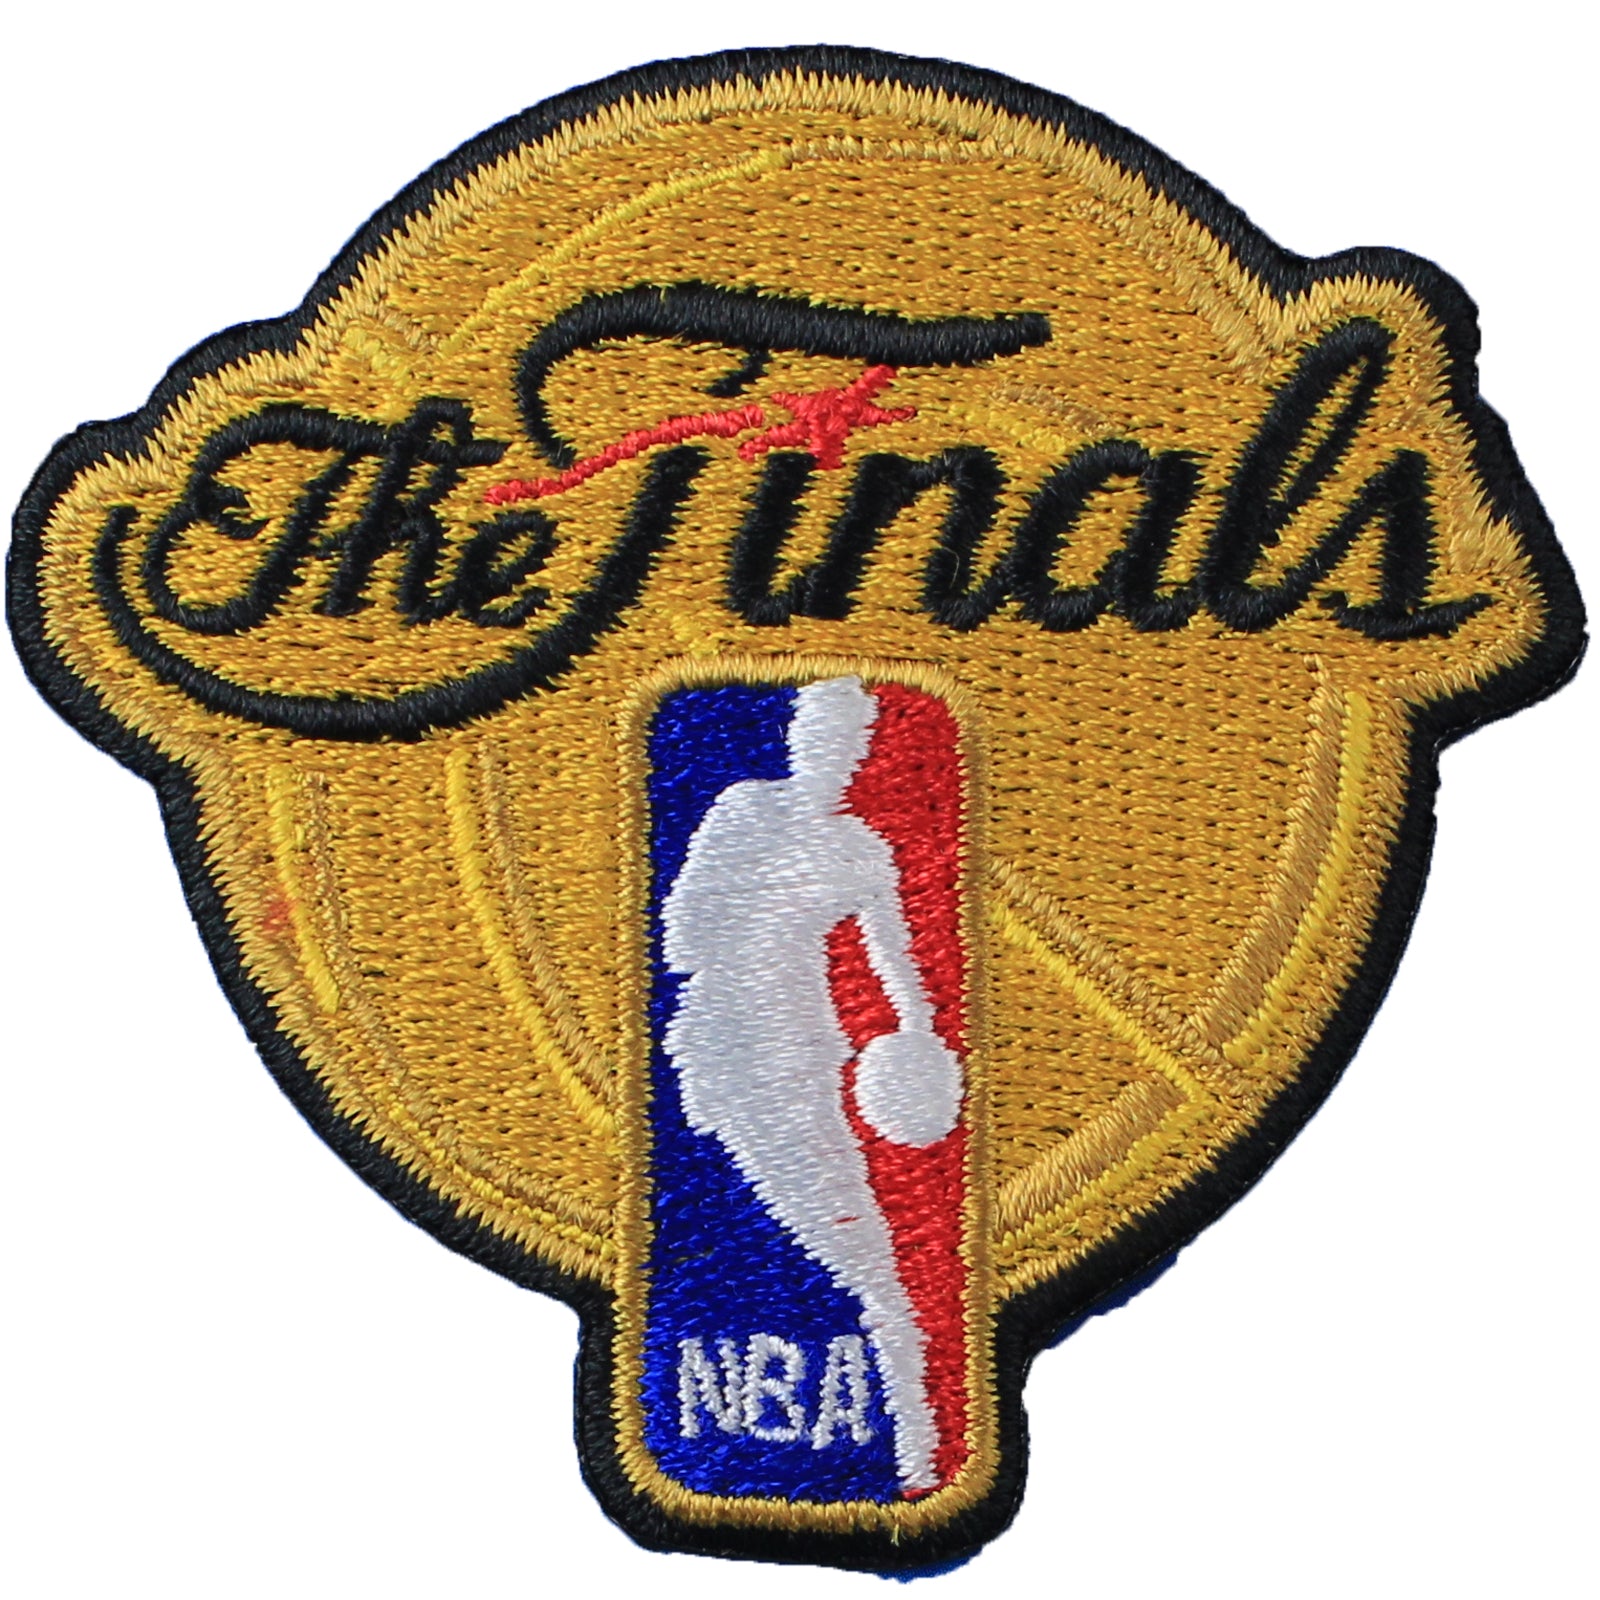 NBA Finals logo, CDO Encyclopedia